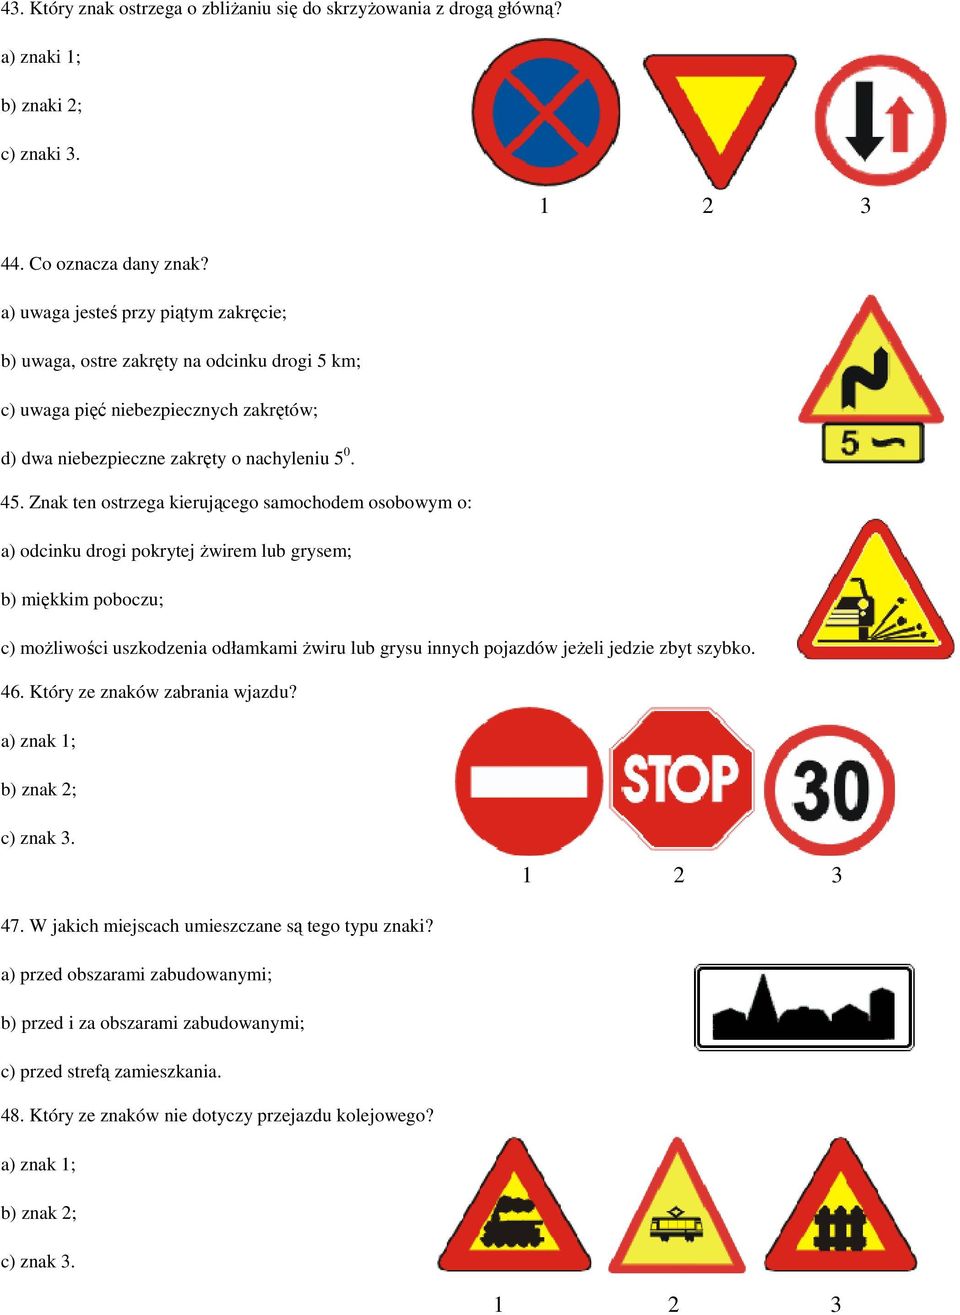 Znak ten ostrzega kierującego samochodem osobowym o: a) odcinku drogi pokrytej Ŝwirem lub grysem; b) miękkim poboczu; c) moŝliwości uszkodzenia odłamkami Ŝwiru lub grysu innych pojazdów jeŝeli